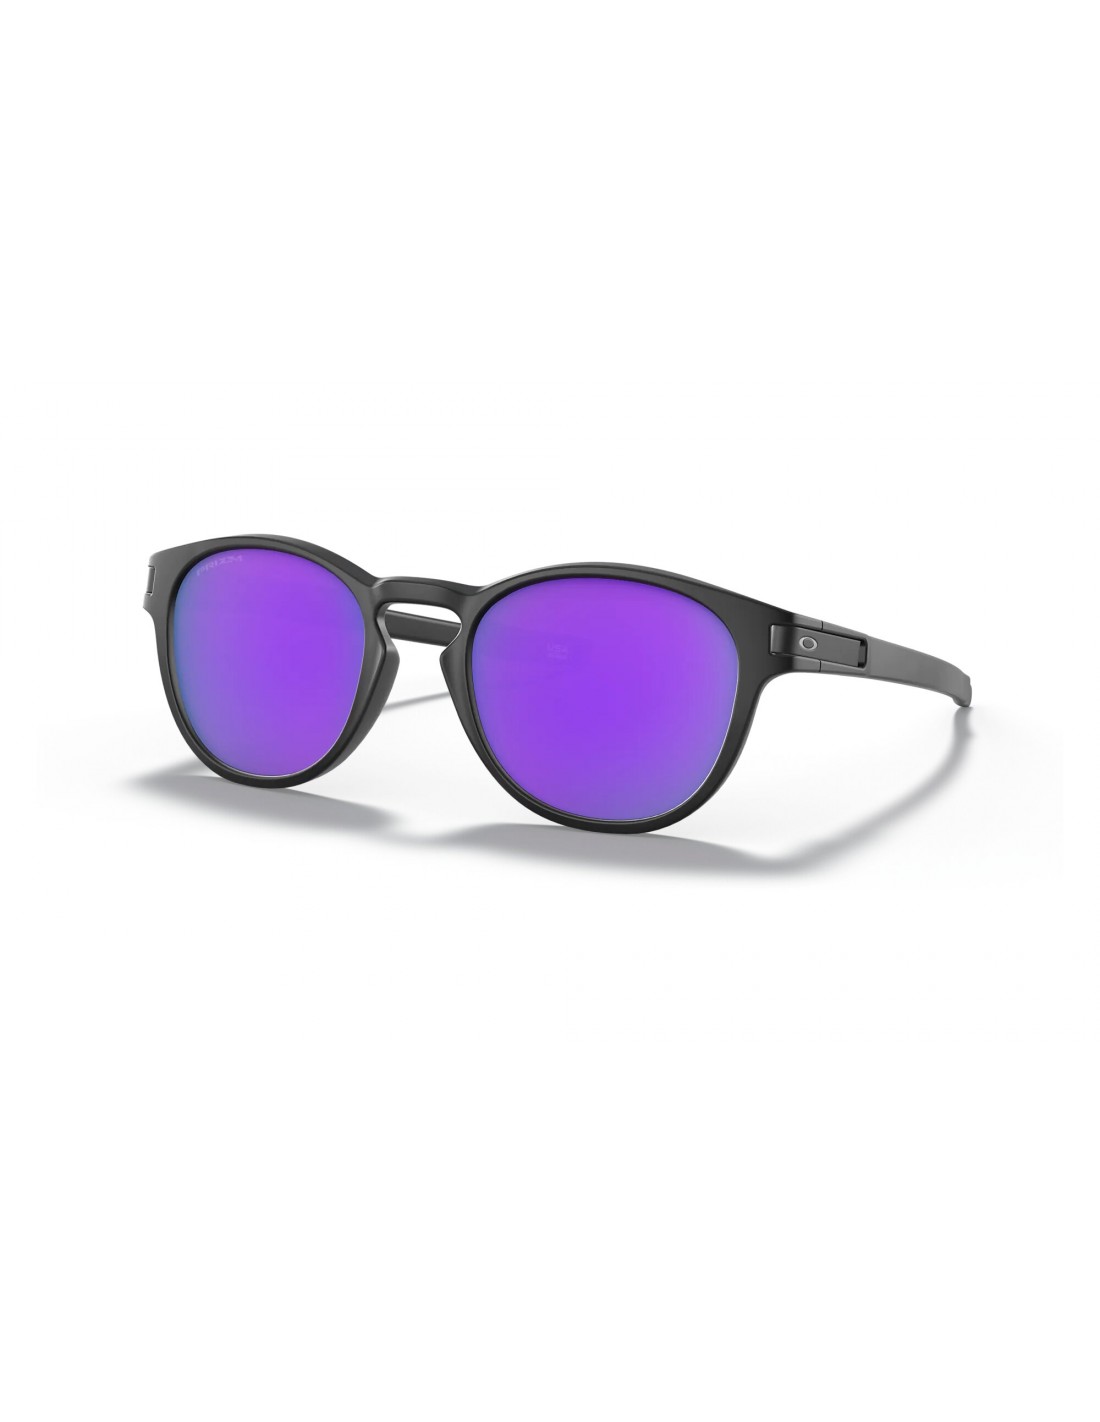 Oakley Sonnenbrille - Latch - Matte Black - Prizm Violet Brillenfassung - Lifestylebrillen, von Oakley